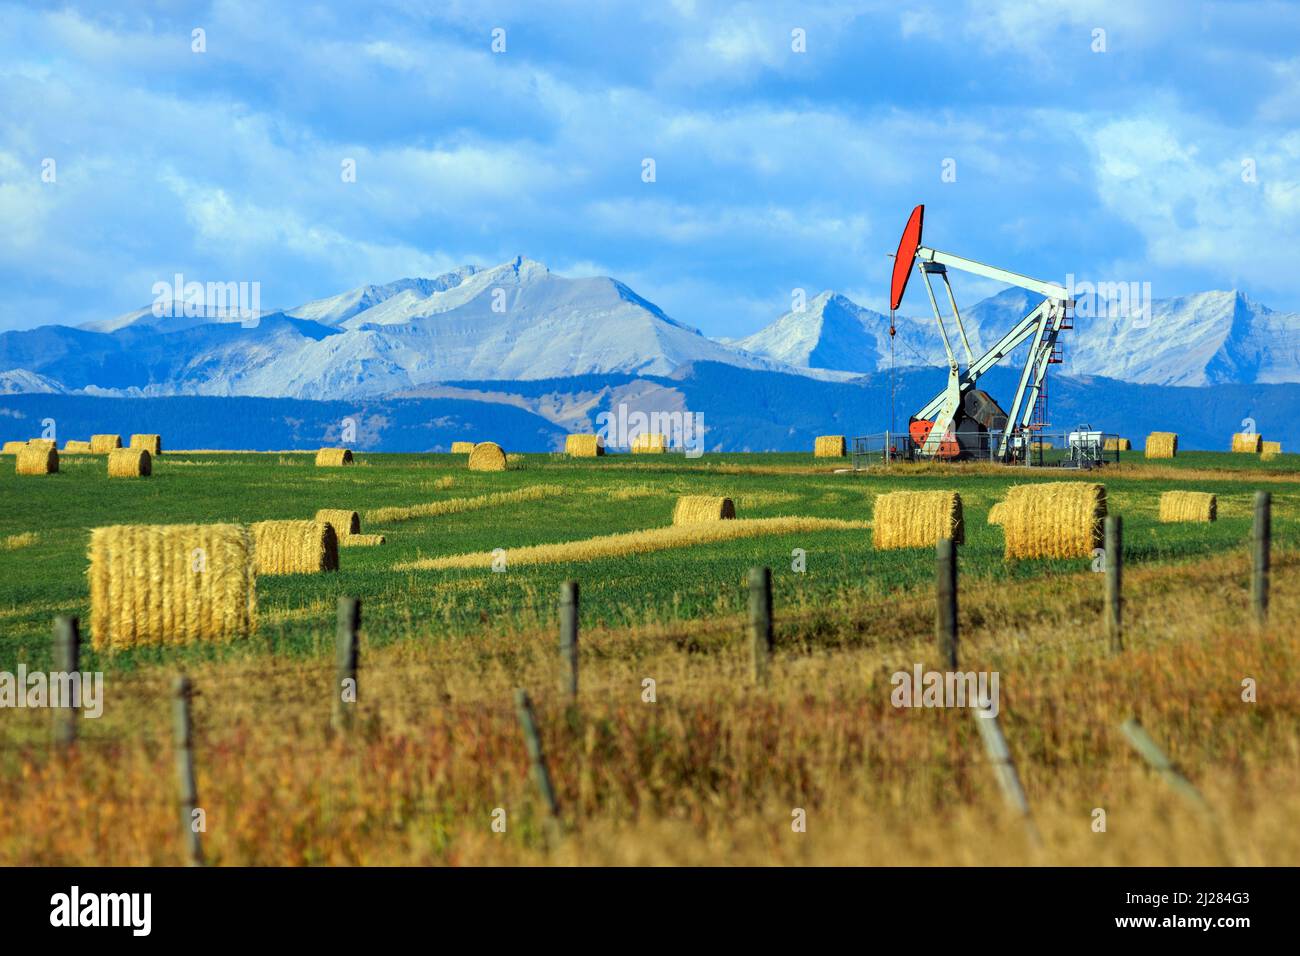 Ein Pumpjack-Bohrgerät der Öl- und Gasindustrie in den kanadischen Prärien mit den kanadischen Rockies in Alberta, Kanada. Stockfoto